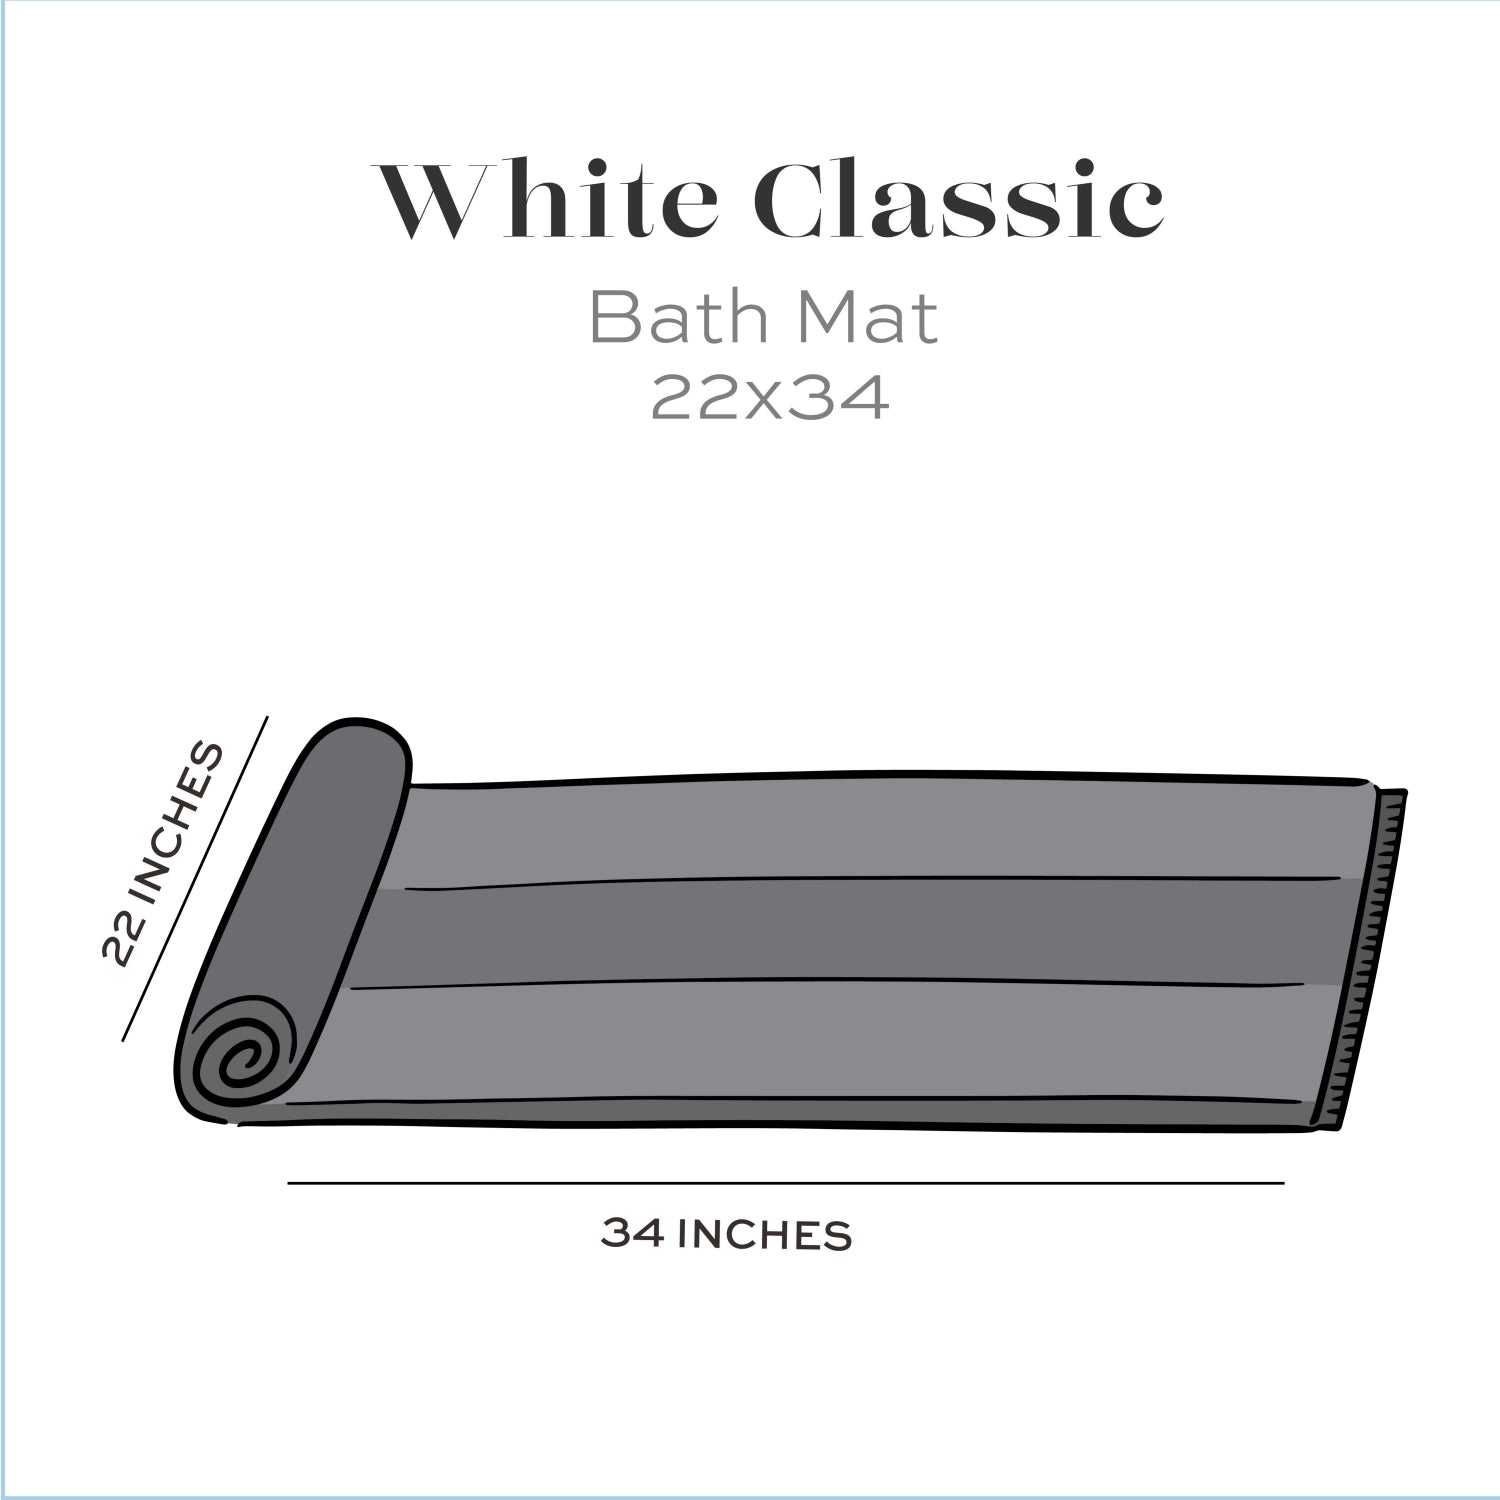 22x34 inches bath mat